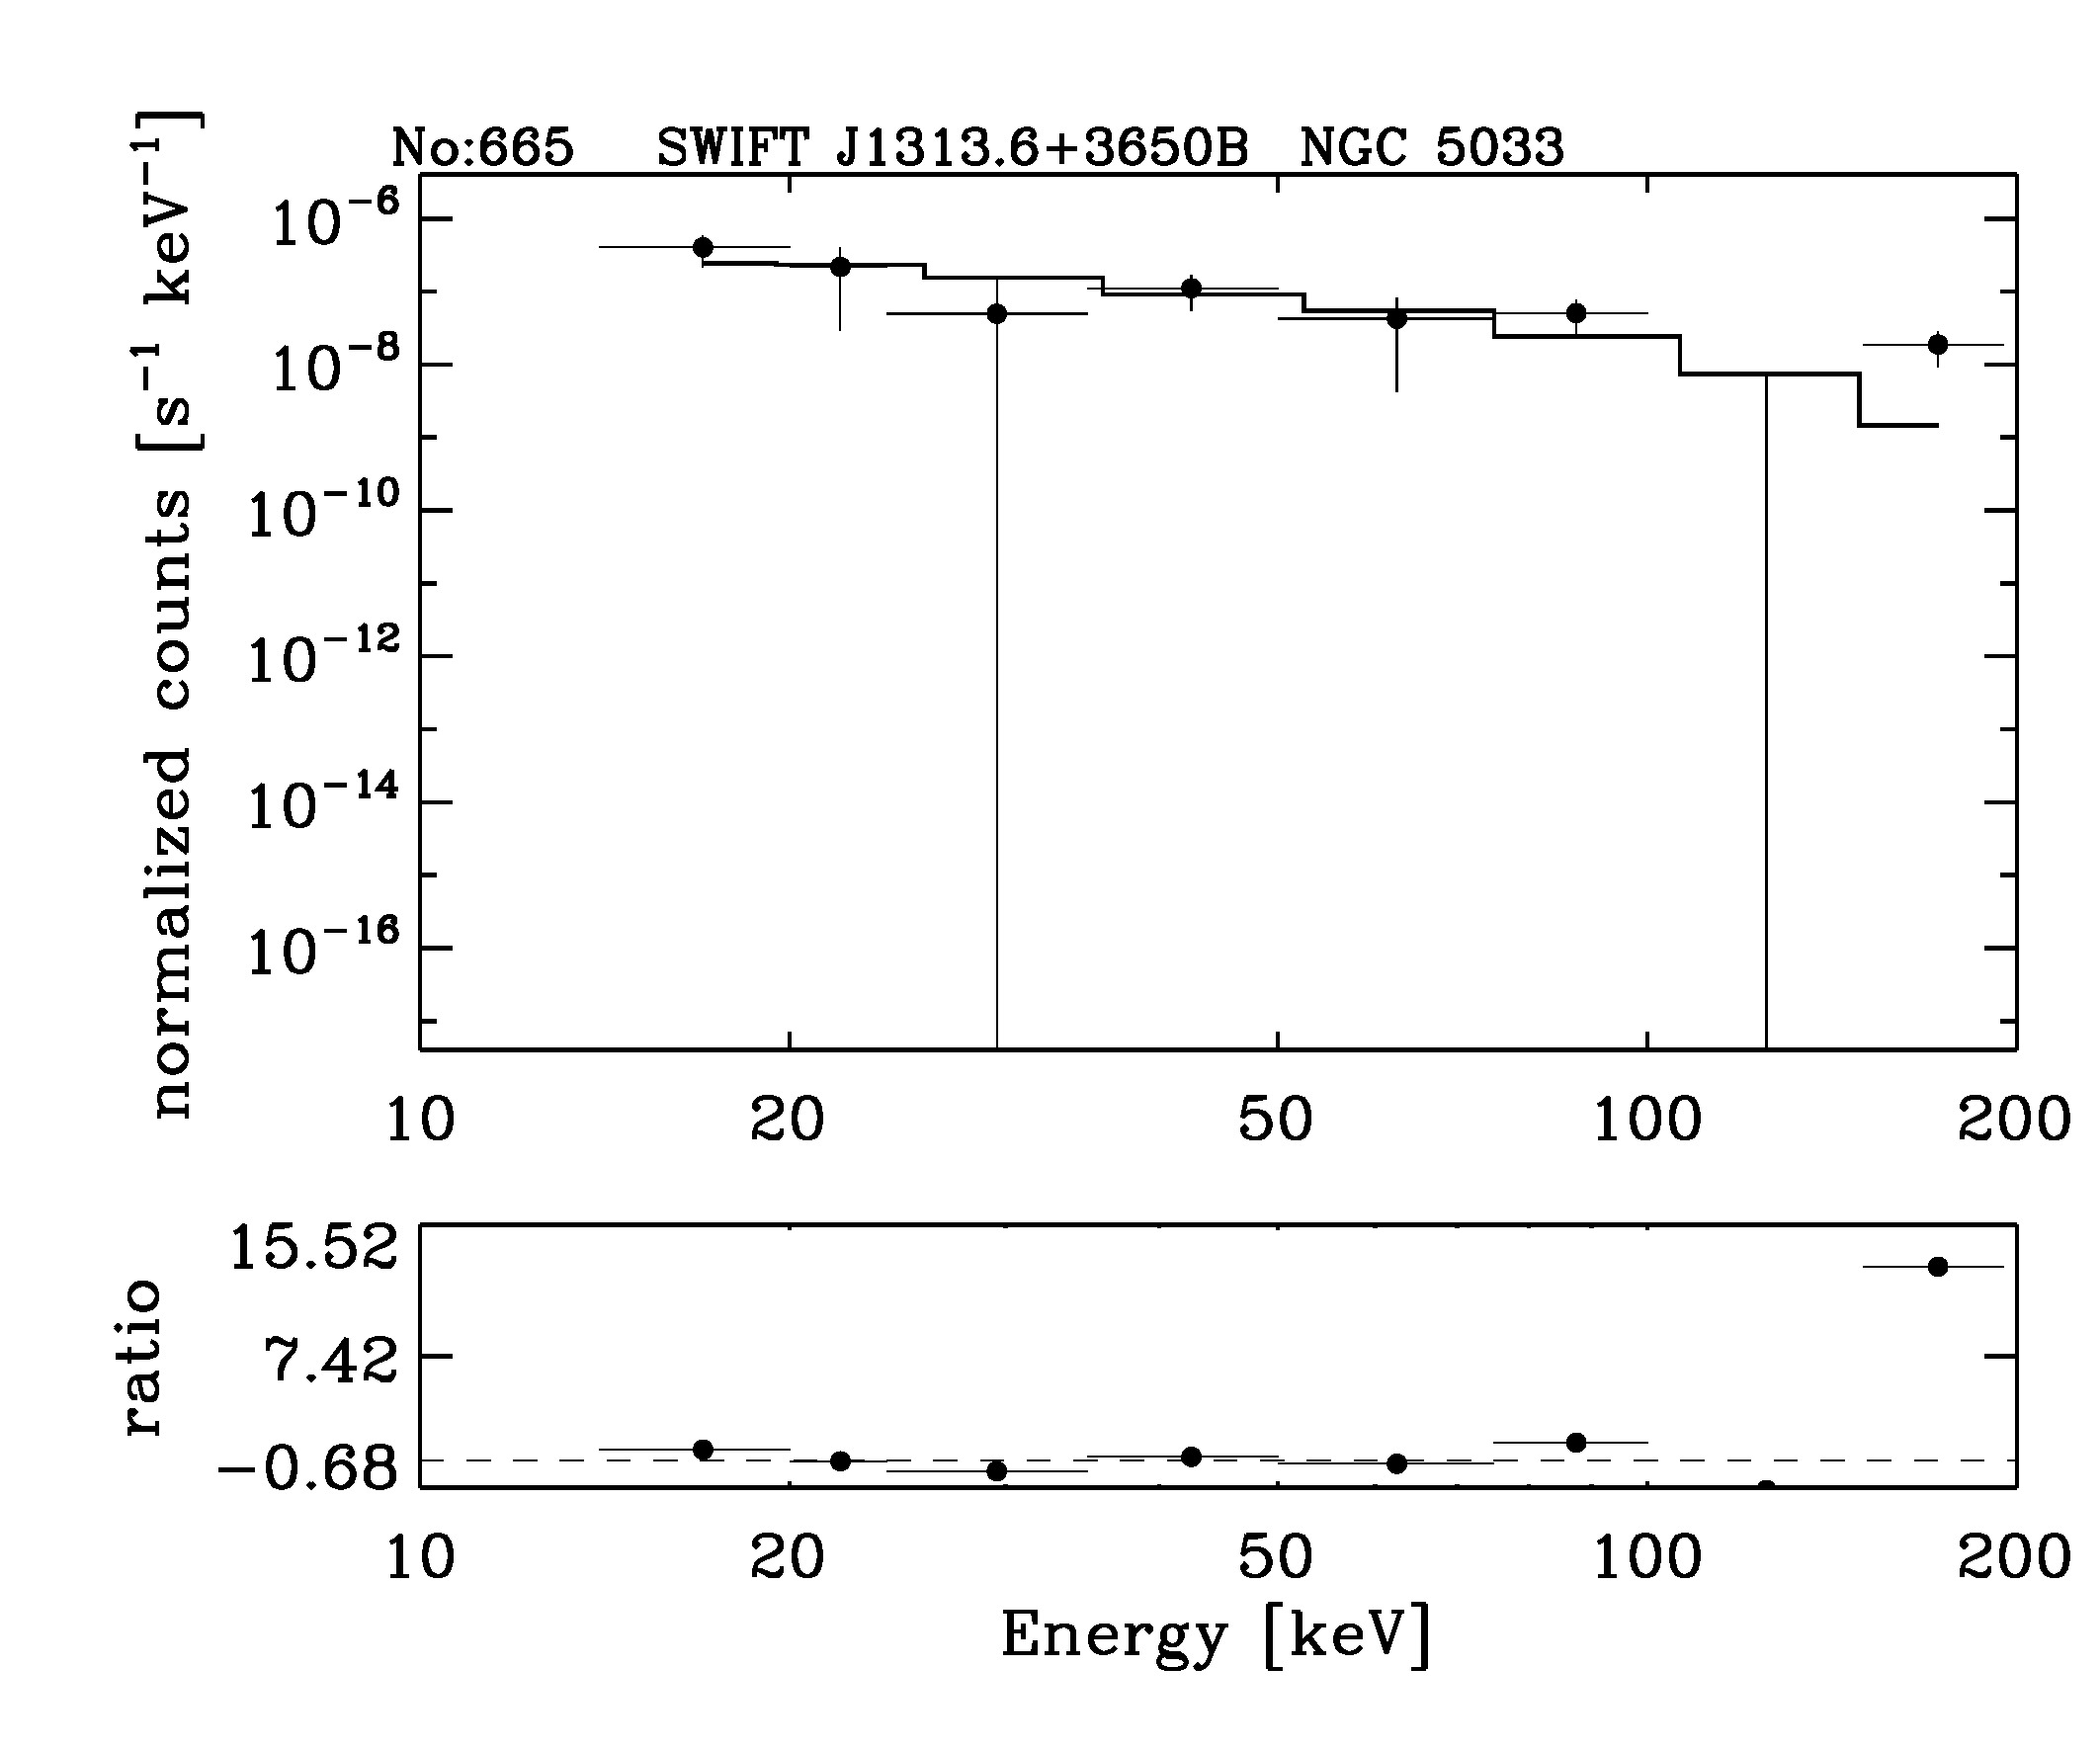 BAT Spectrum for SWIFT J1313.6+3650B